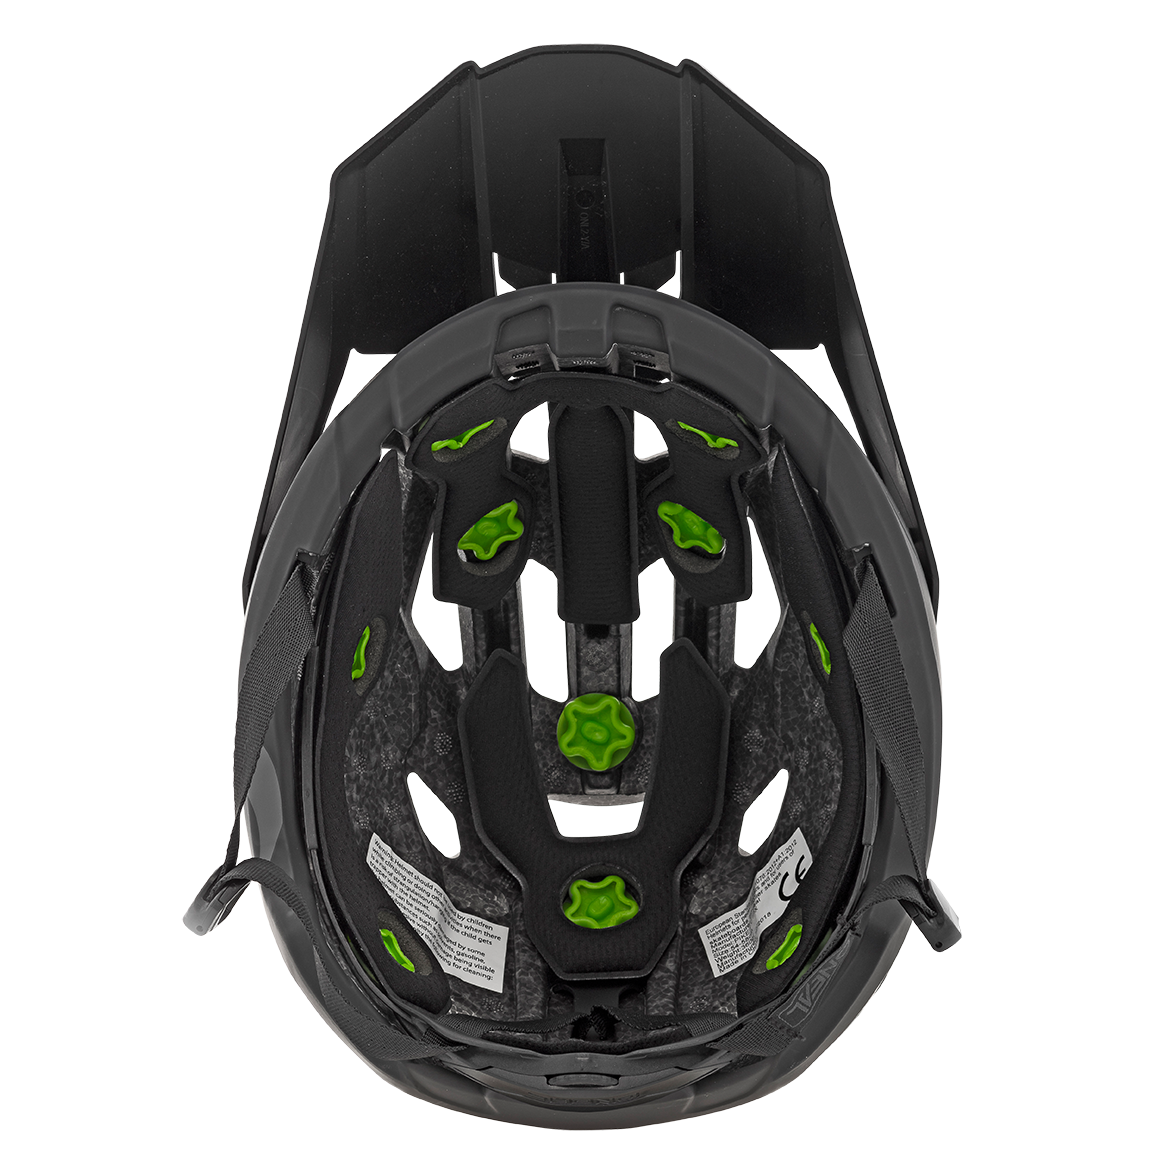 ONEAL PIKE IPX® Helmet STARS V.22 Black/Gray